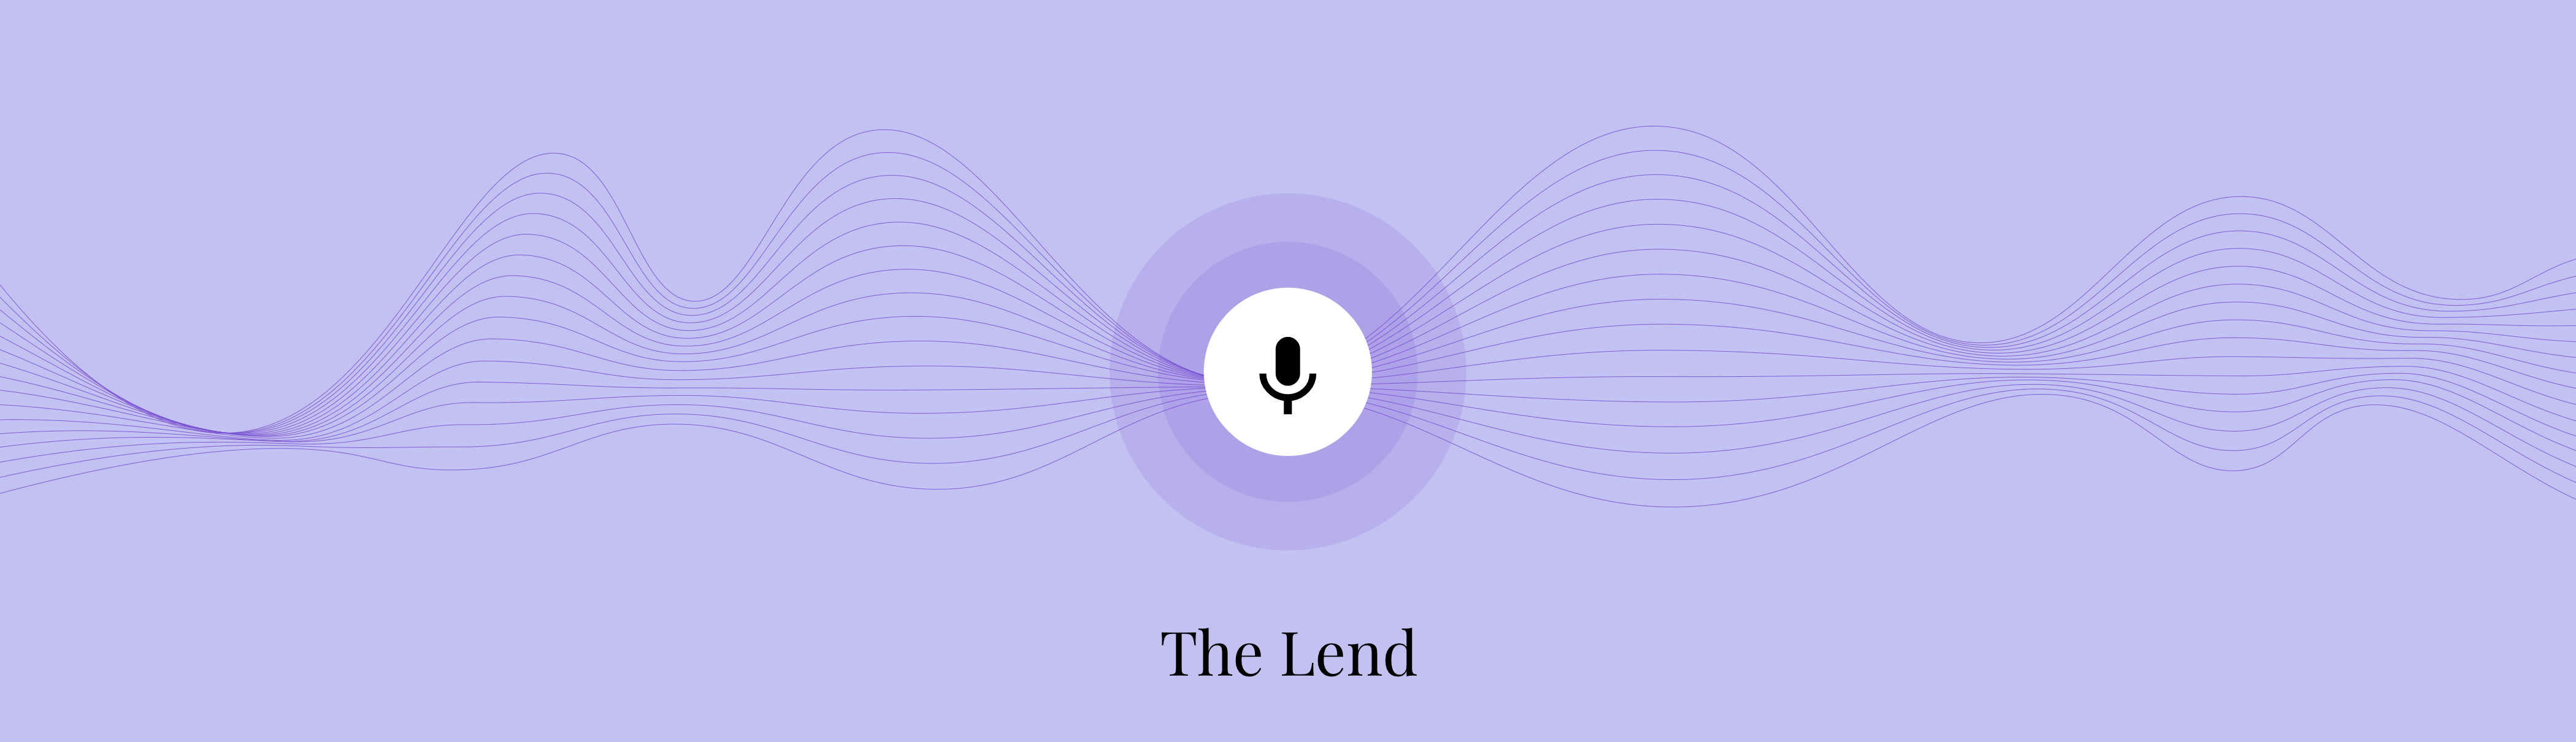 The Lend